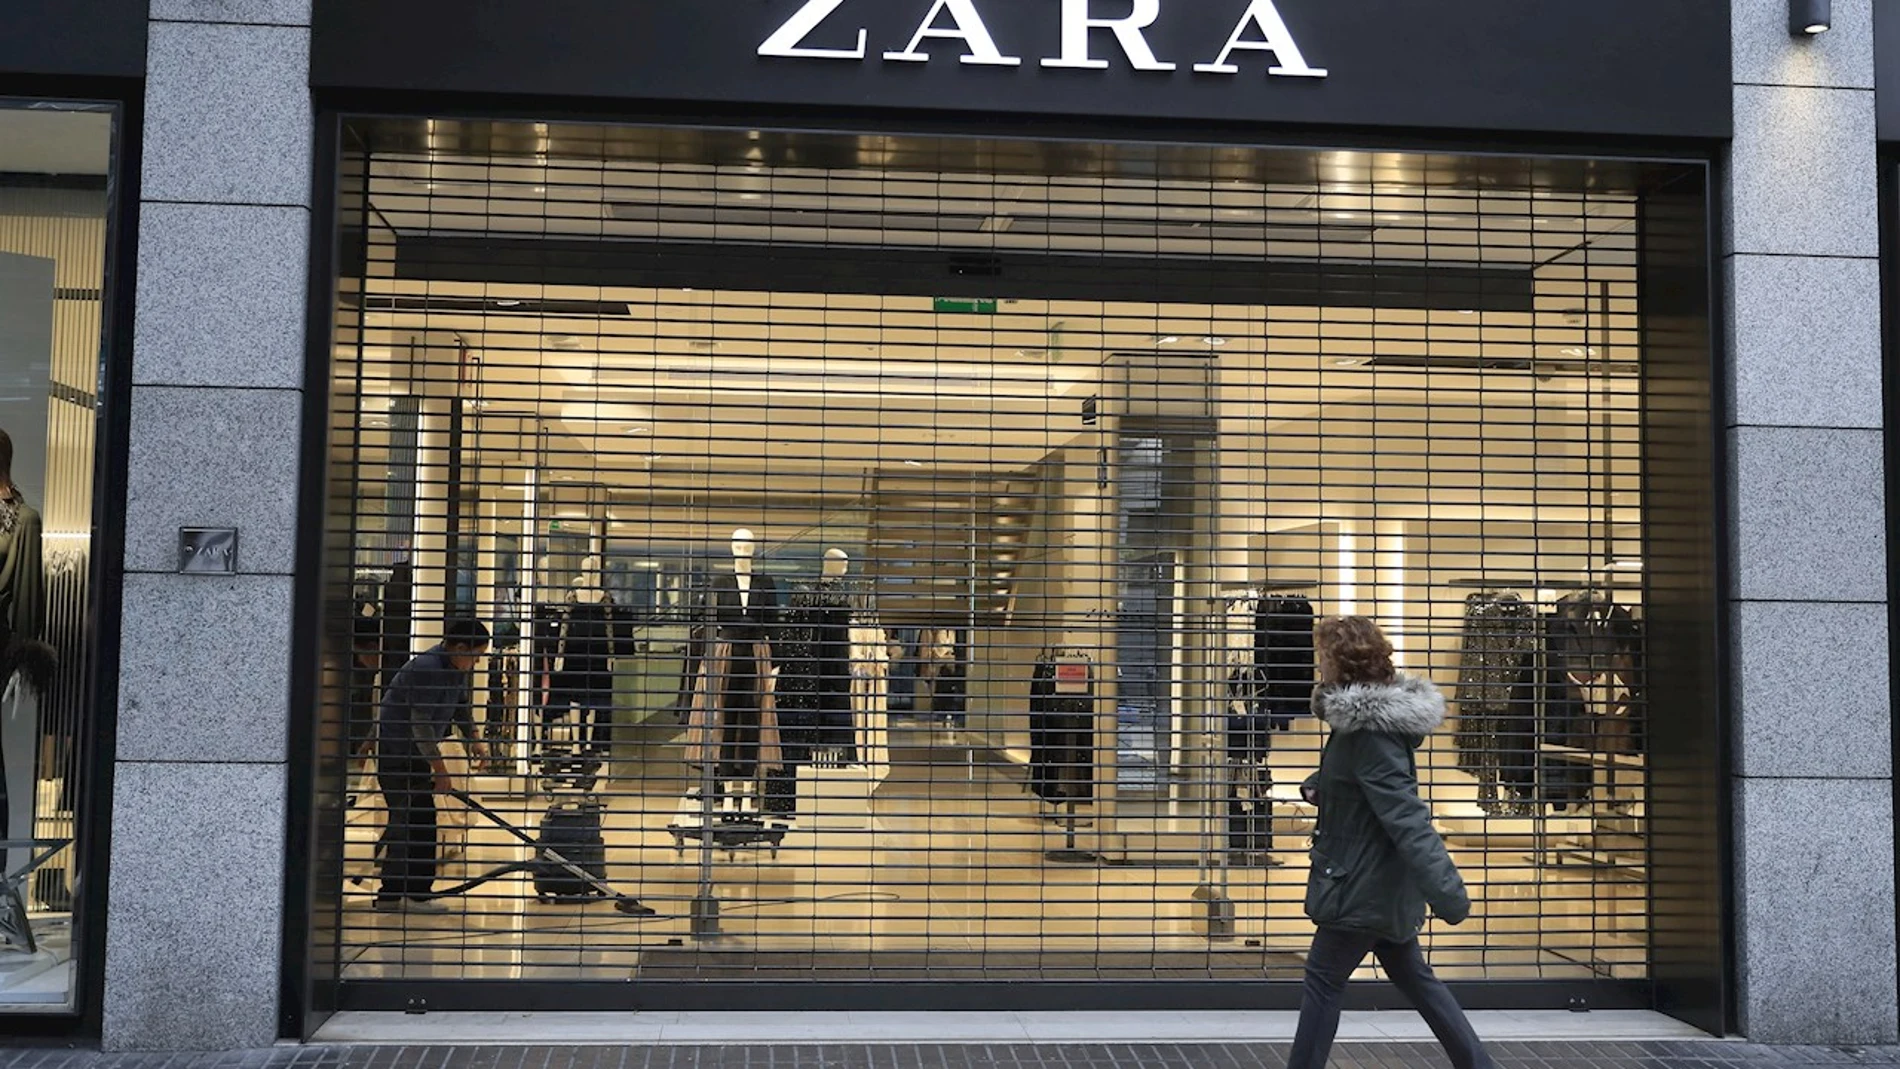 Las etiquetas de Zara y el significado de sus símbolos